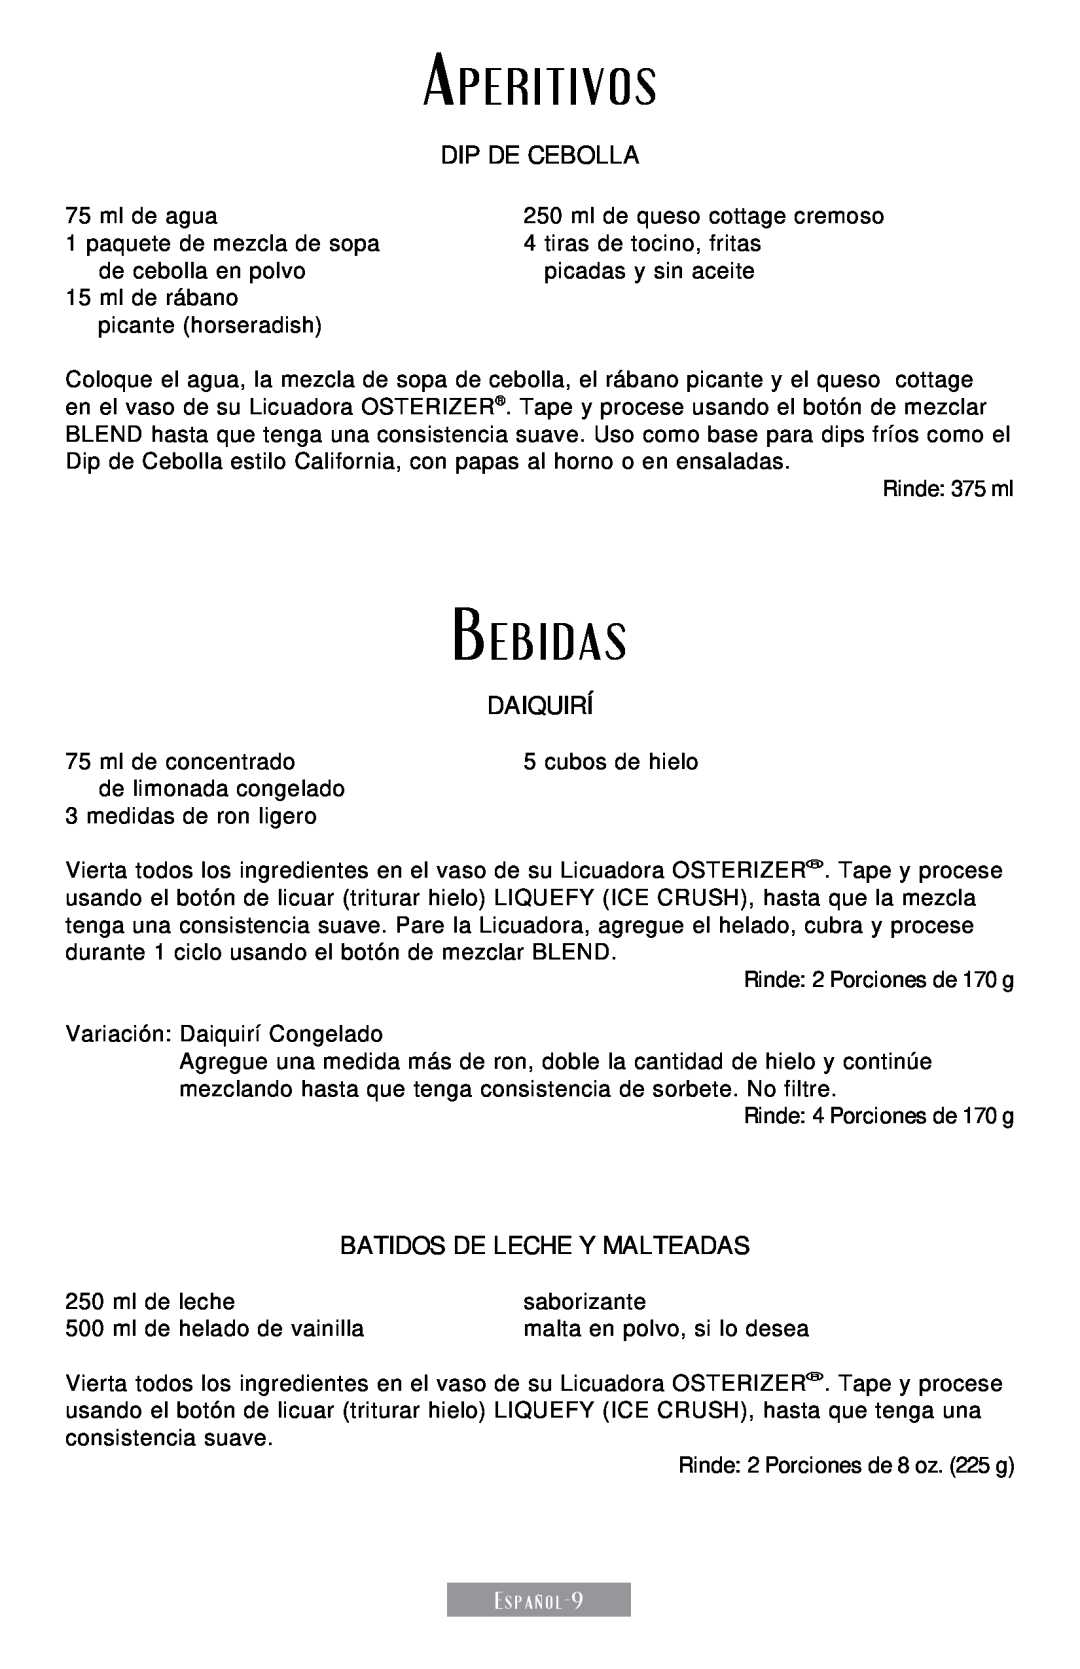 Sunbeam 250-22 instruction manual Dip de Cebolla, Daiquirí, Batidos de Leche y Malteadas 